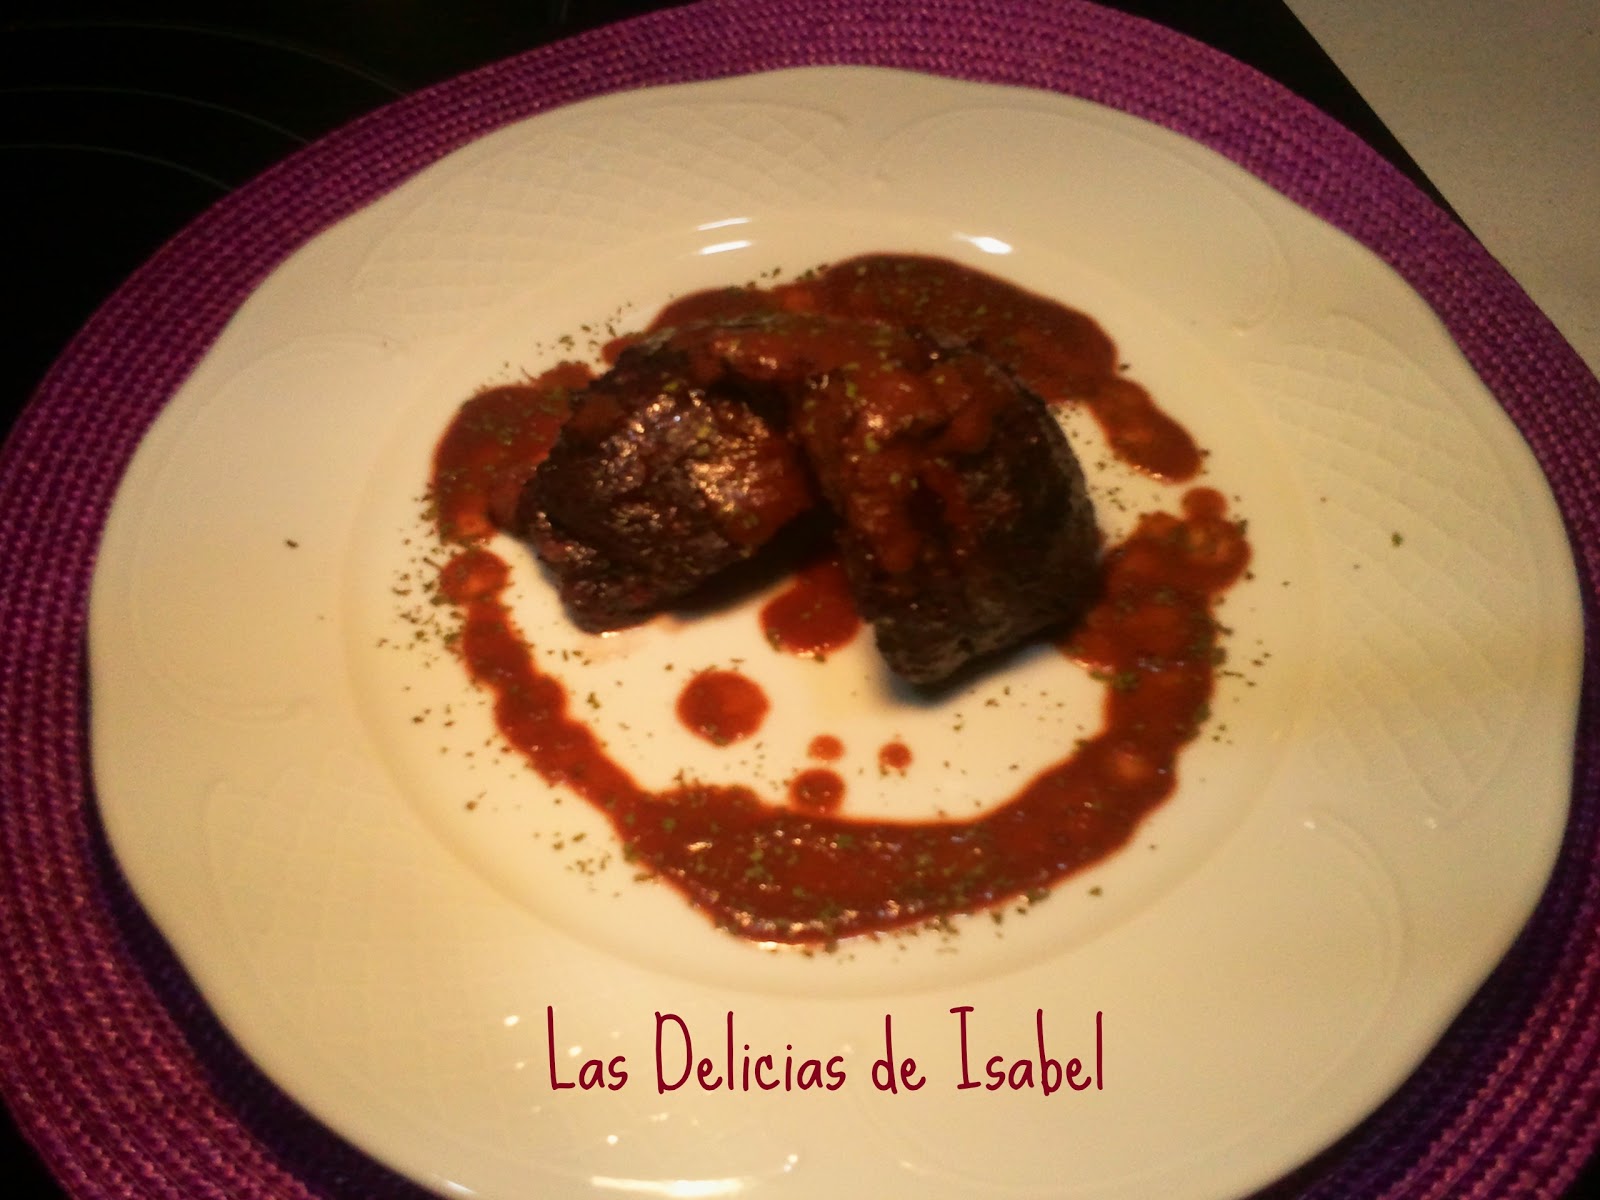 Carrillada de cerdo Iberico en salsa de vino tinto | Las Delicias de Isabel